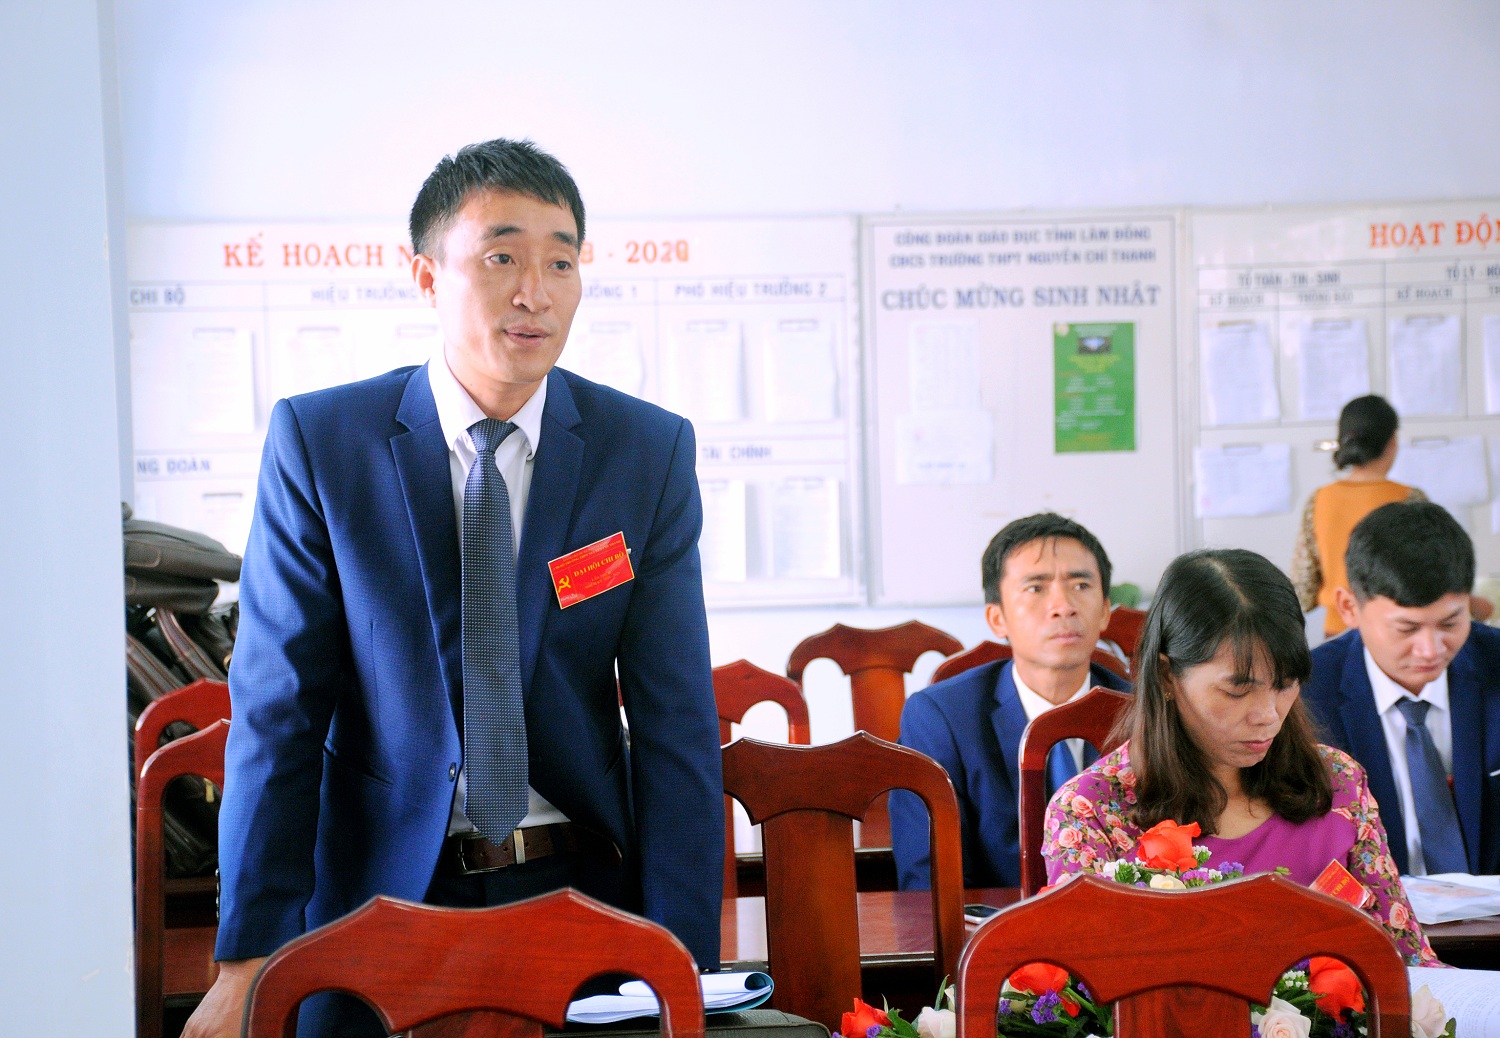 Đồng chí Võ Văn Thành - Giáo viên môn Ngữ Văn phát biểu, đóng góp ý kiến cho hội nghị